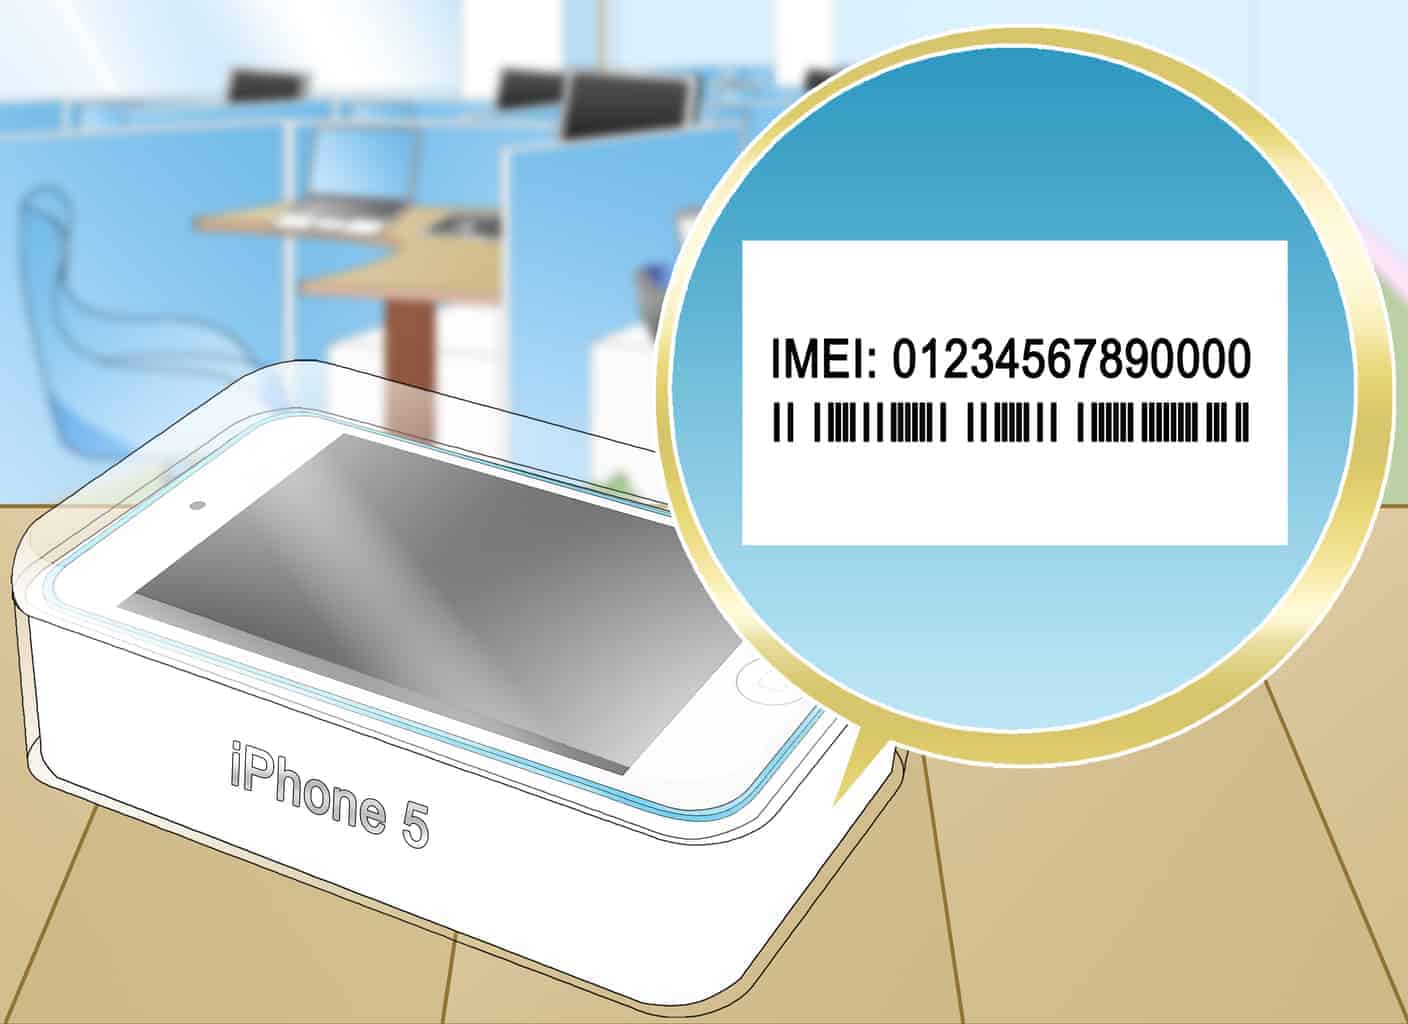 Самостоятельный поиск украденного телефона по IMEI